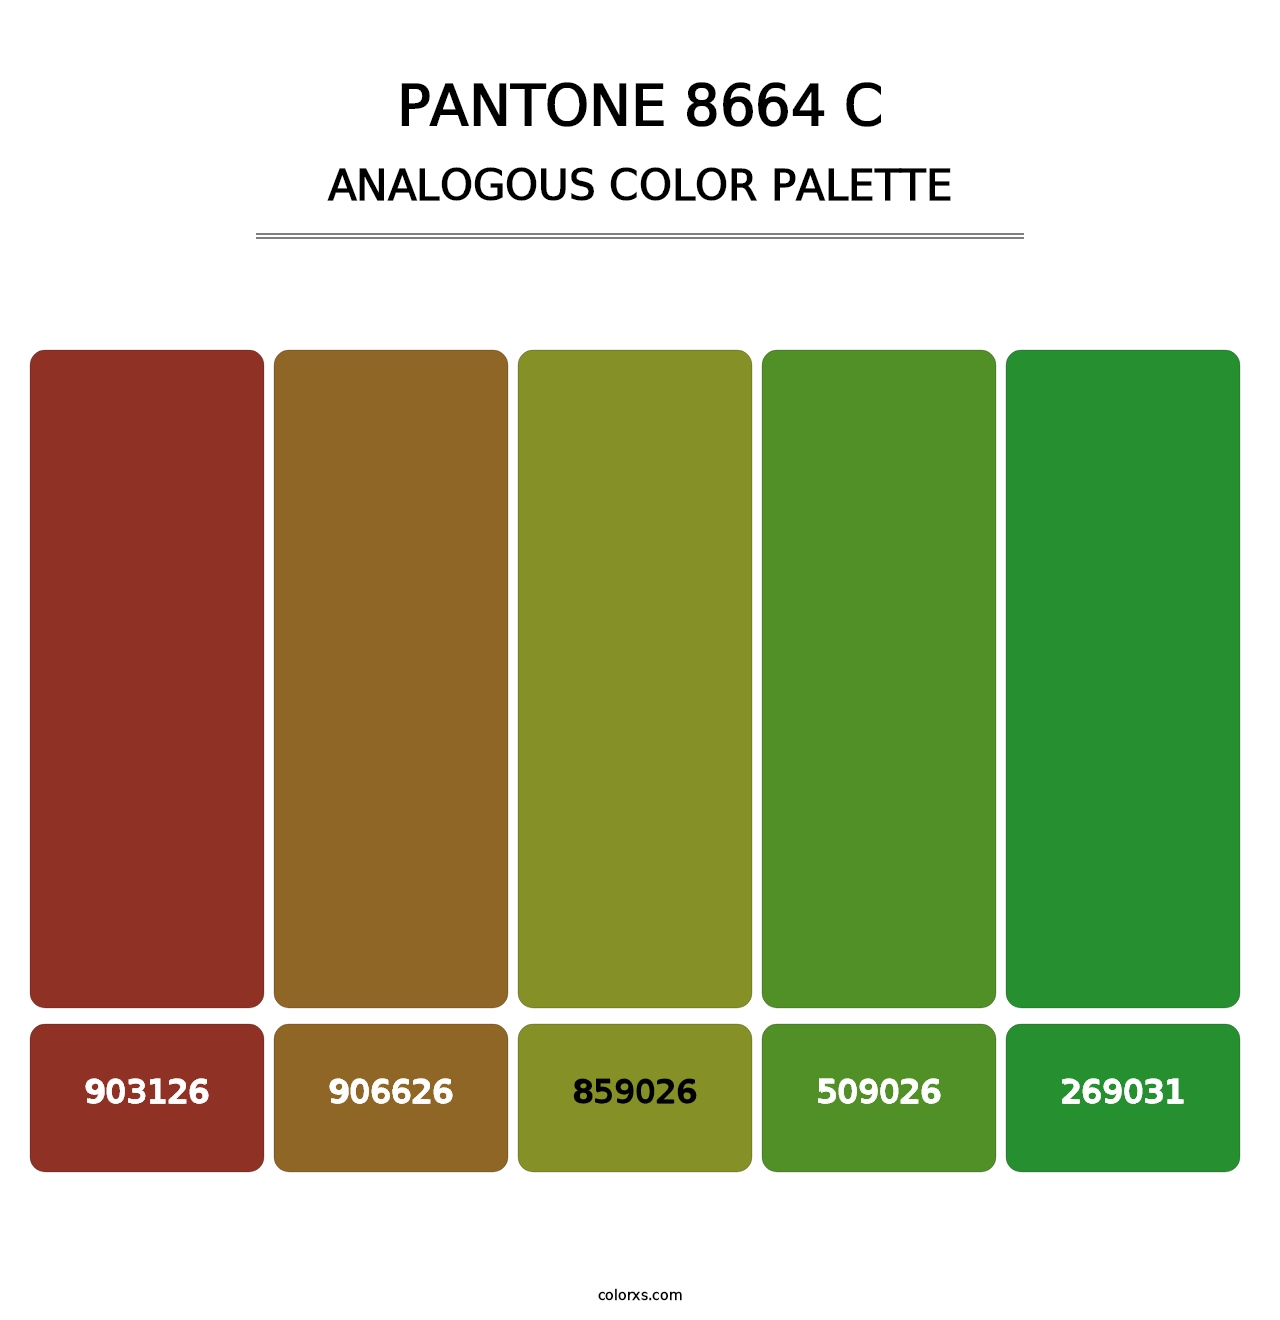 PANTONE 8664 C - Analogous Color Palette